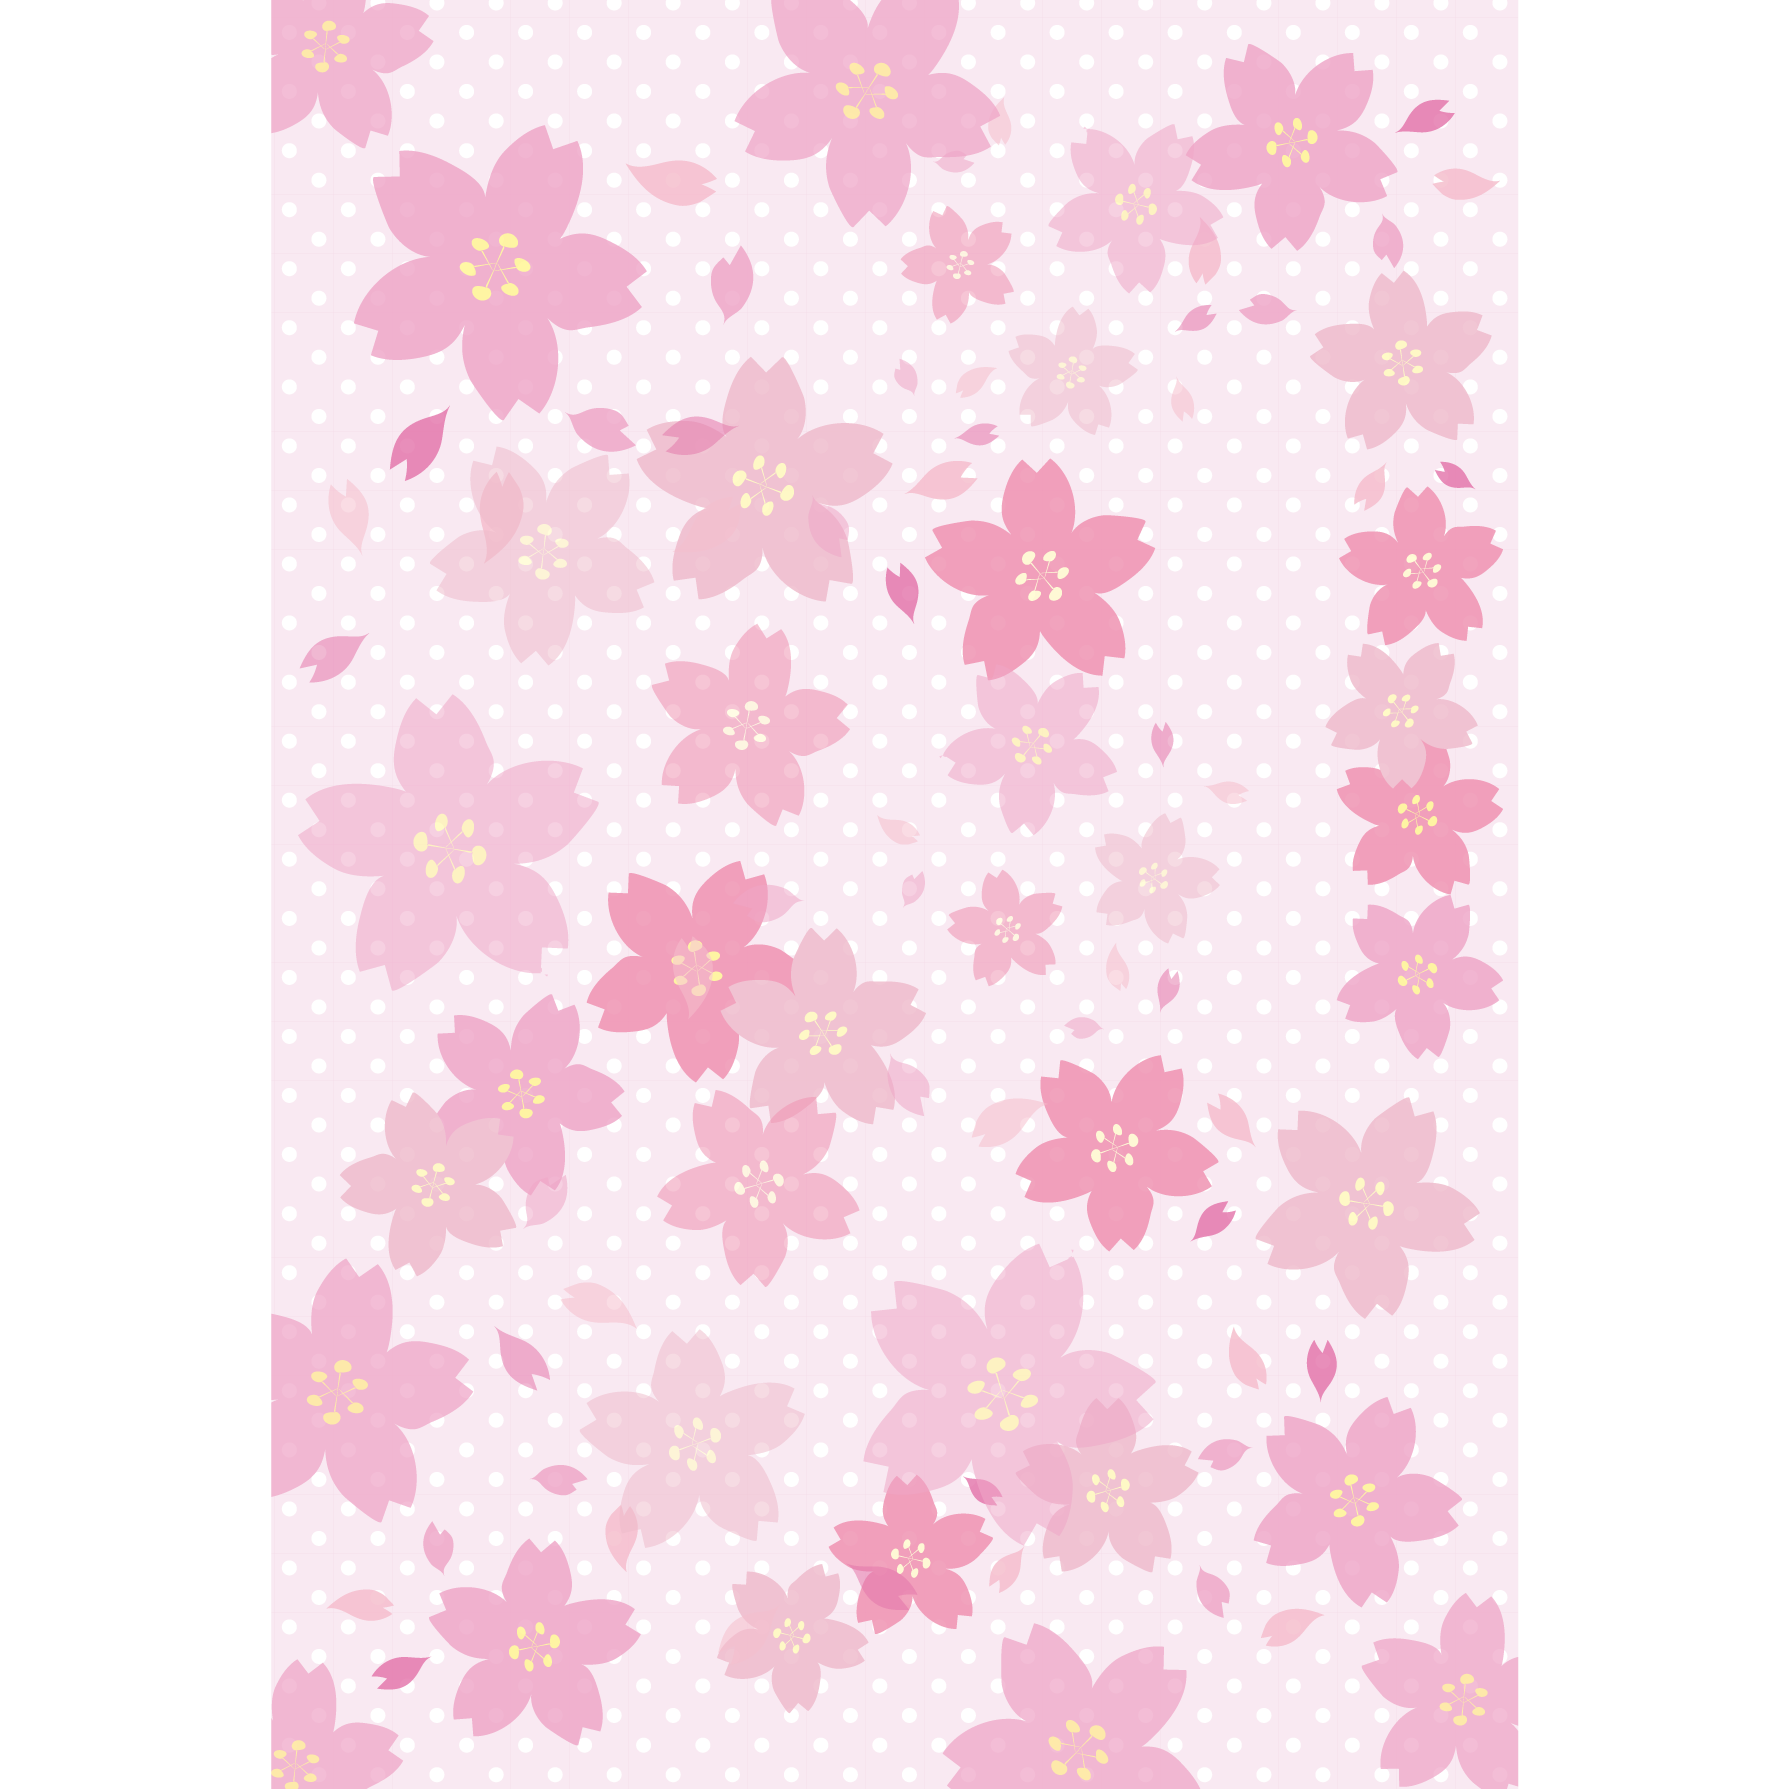 桜 サクラ のかわいい背景素材 フリー イラスト A4サイズ 商用